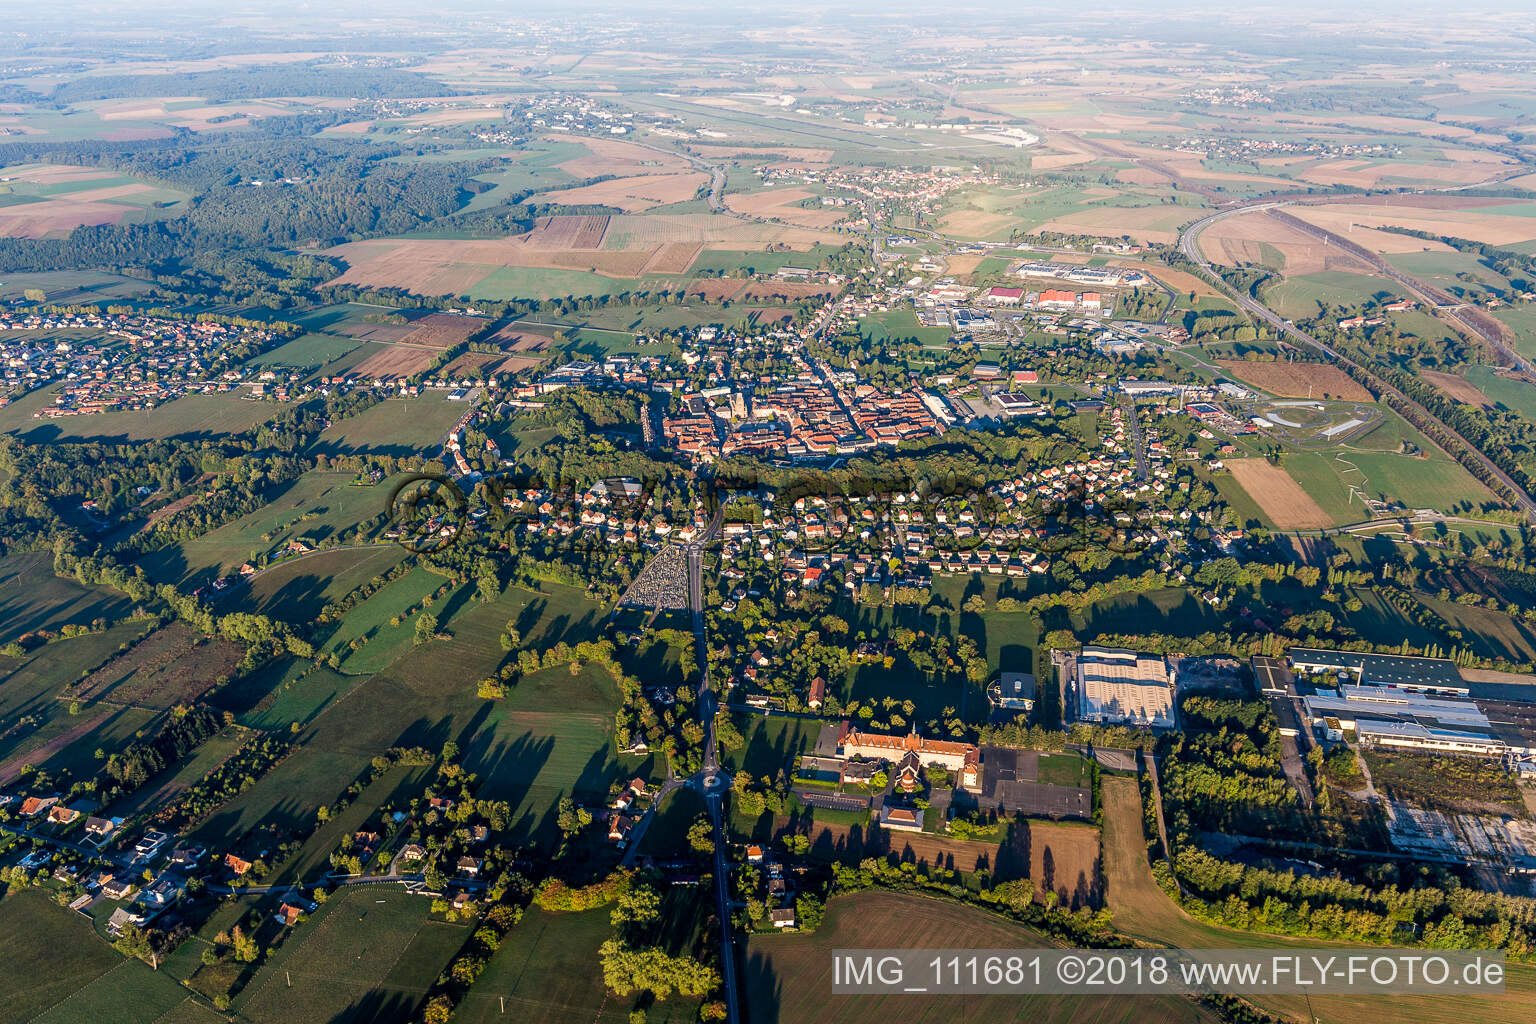 Photographie aérienne de Phalsbourg dans le département Moselle, France